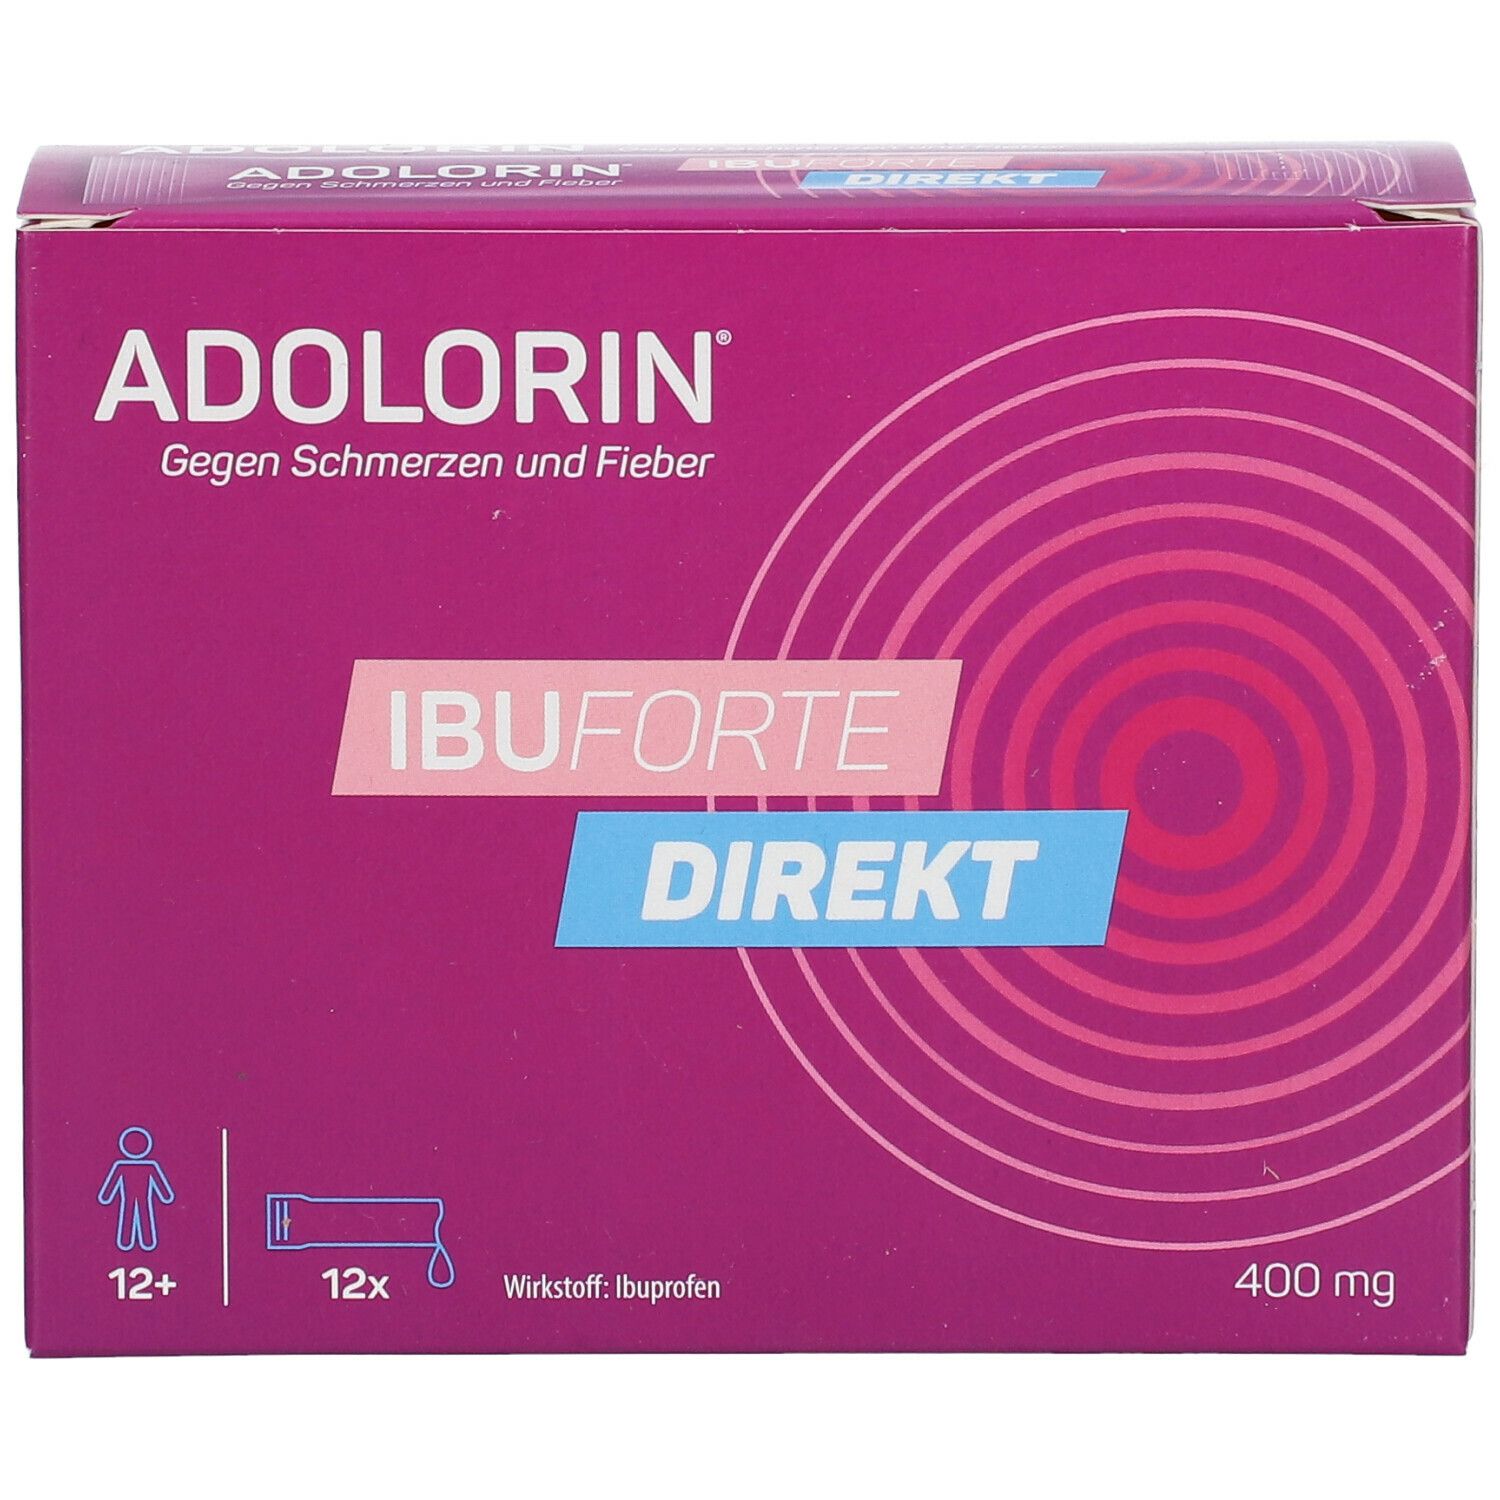 NICA Apotheke - NEUES PRODUKT - Adolorin / Adolorini Sticks